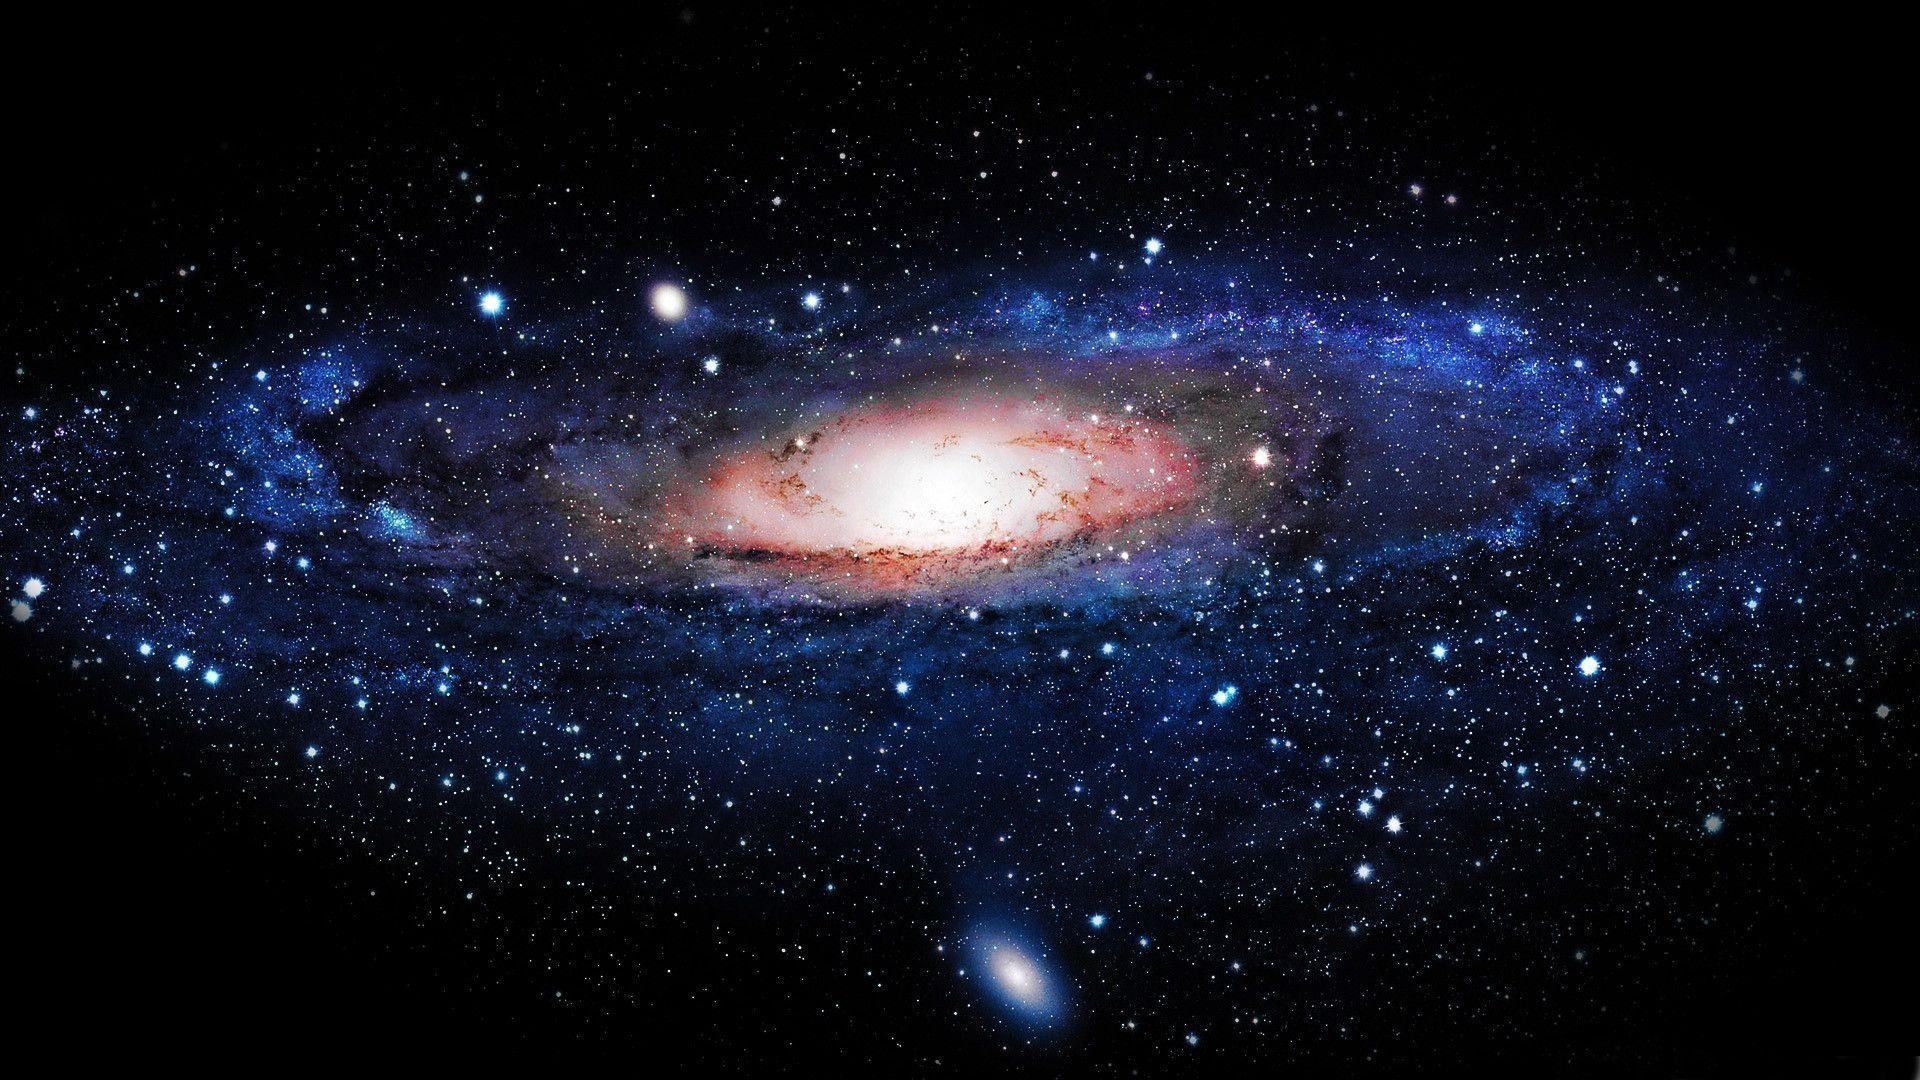 Wallpaper Milky Way Galaxy 13684 Background. Widebackground